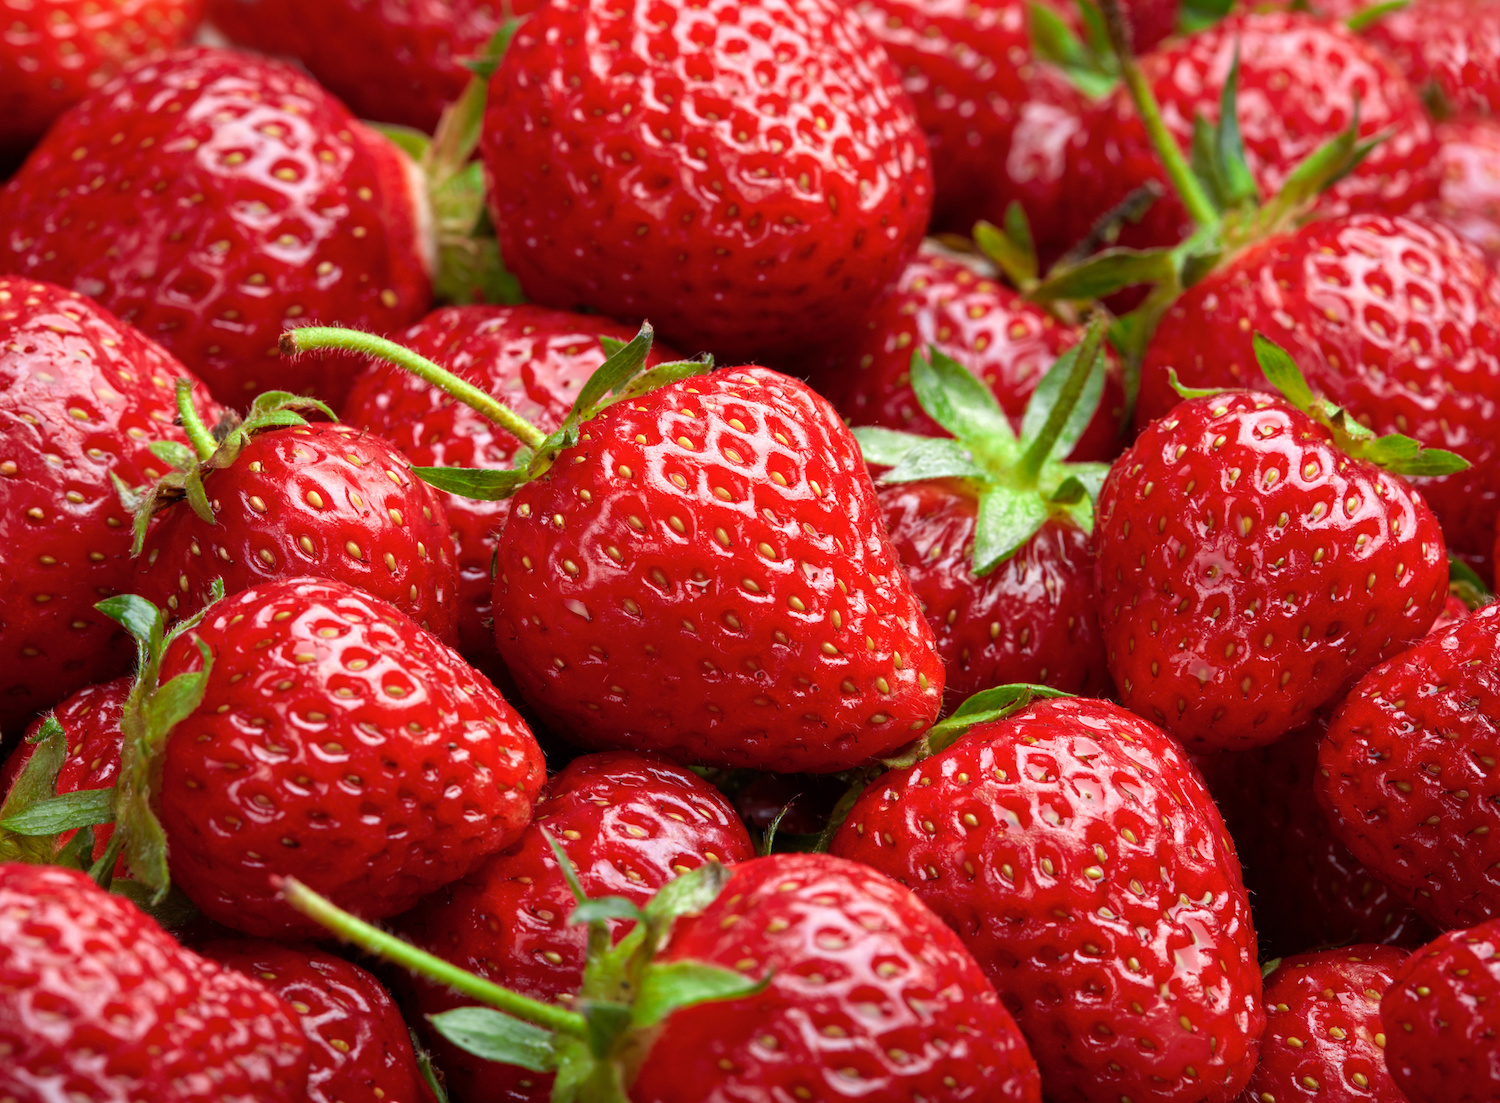 6 strawberries = 25mg